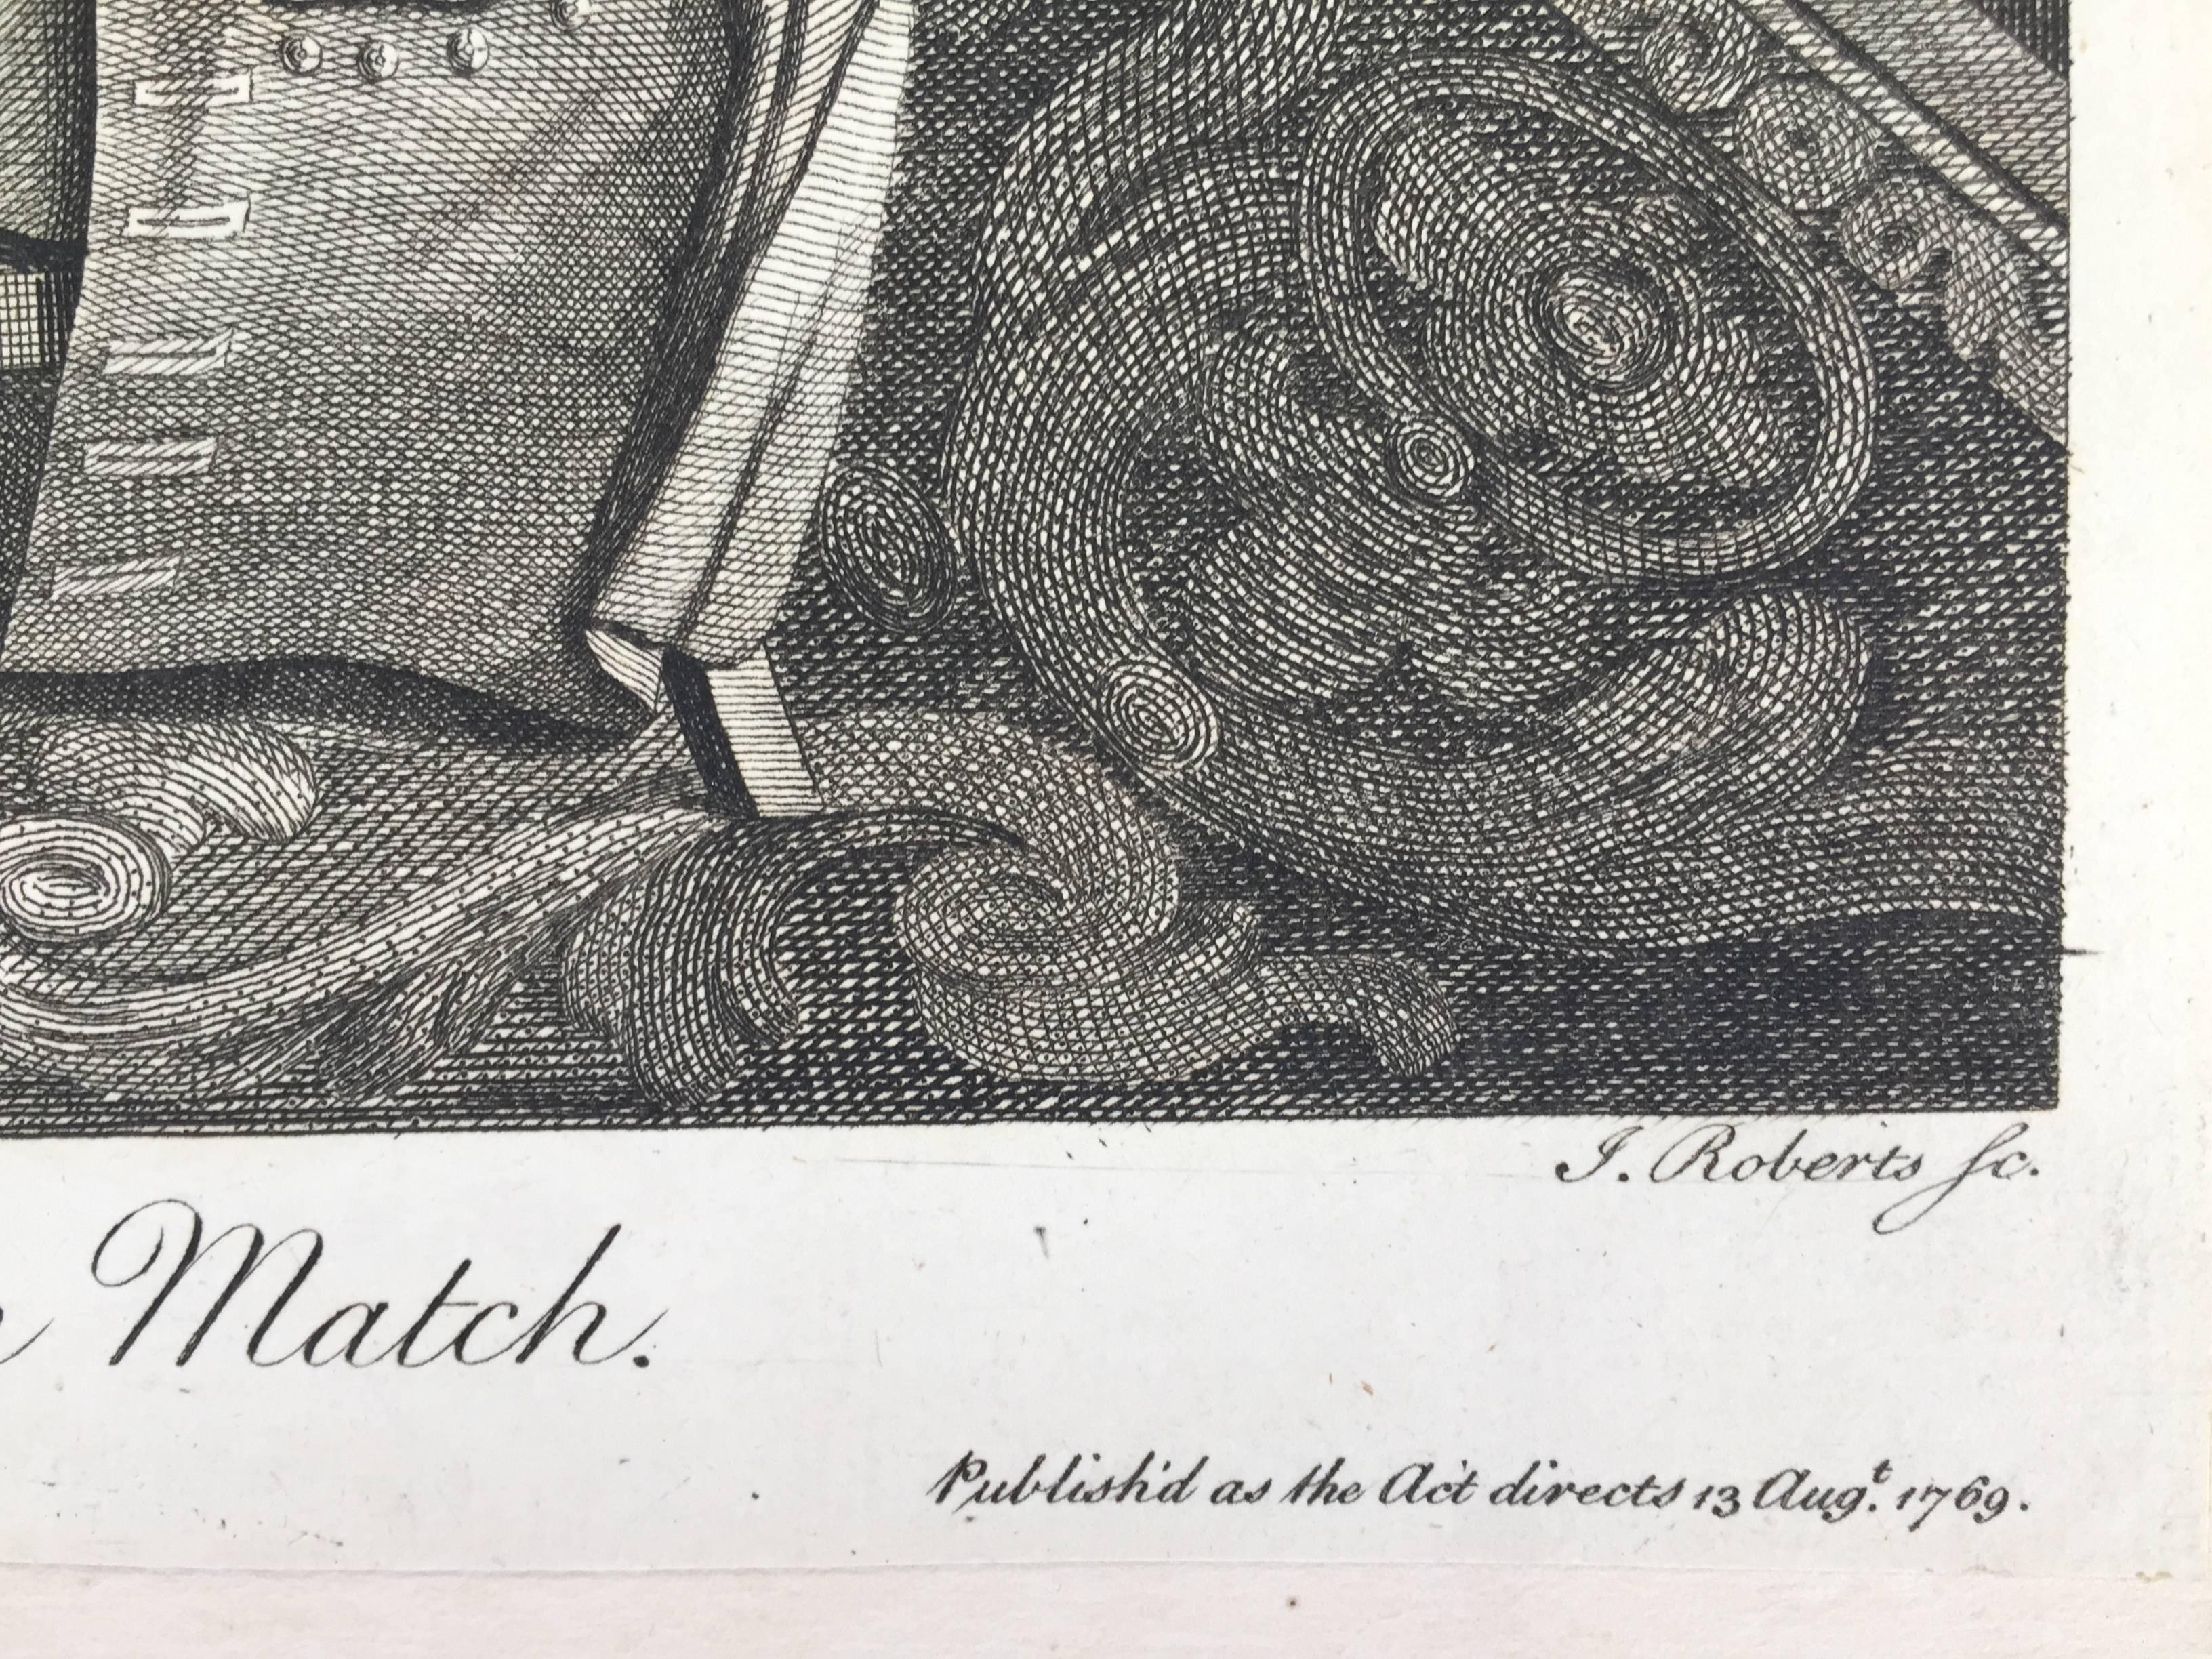                                   
BRITISCHE KARIKATUR DES ACHTZEHNTEN JAHRHUNDERTS

          THE HAPPY CONSULTATION, oder MODERN MATCH, 1769 (DG 4335)
          Kupferstich, sehr guter Abdruck. Gestochen von J. Roberts, veröffentlicht als 
       